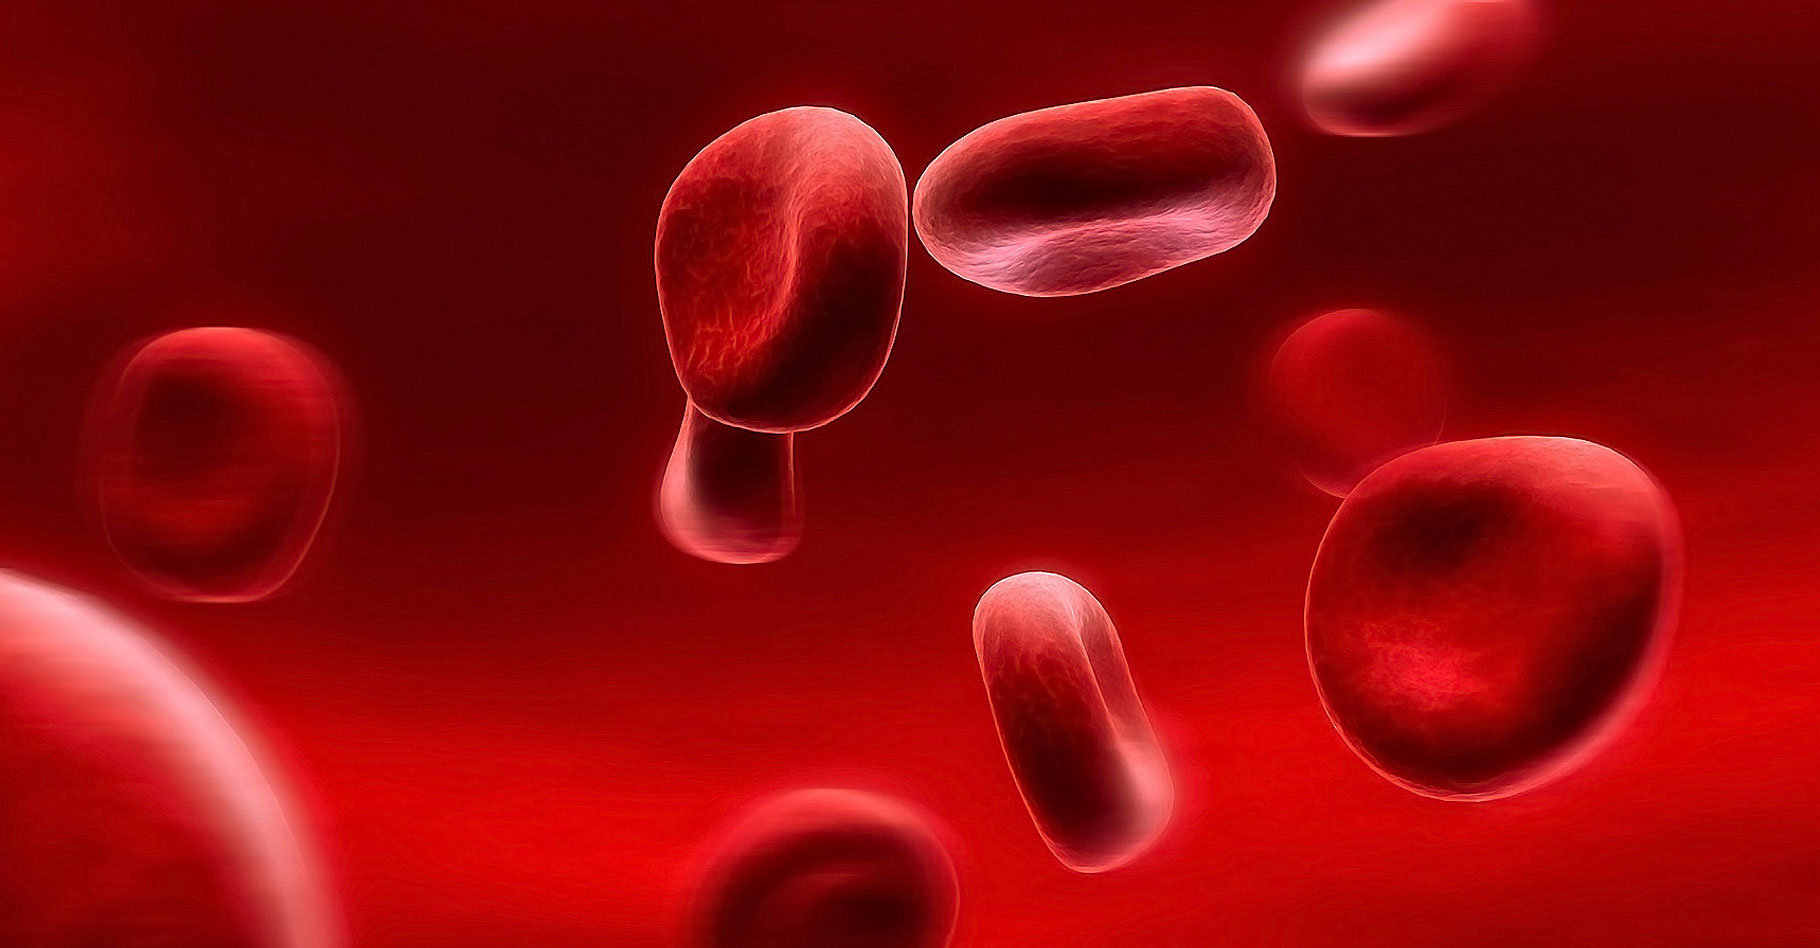 Le sang circule dans les artères.&nbsp;© Zhouxuan -&nbsp;CC BY-SA 2.0